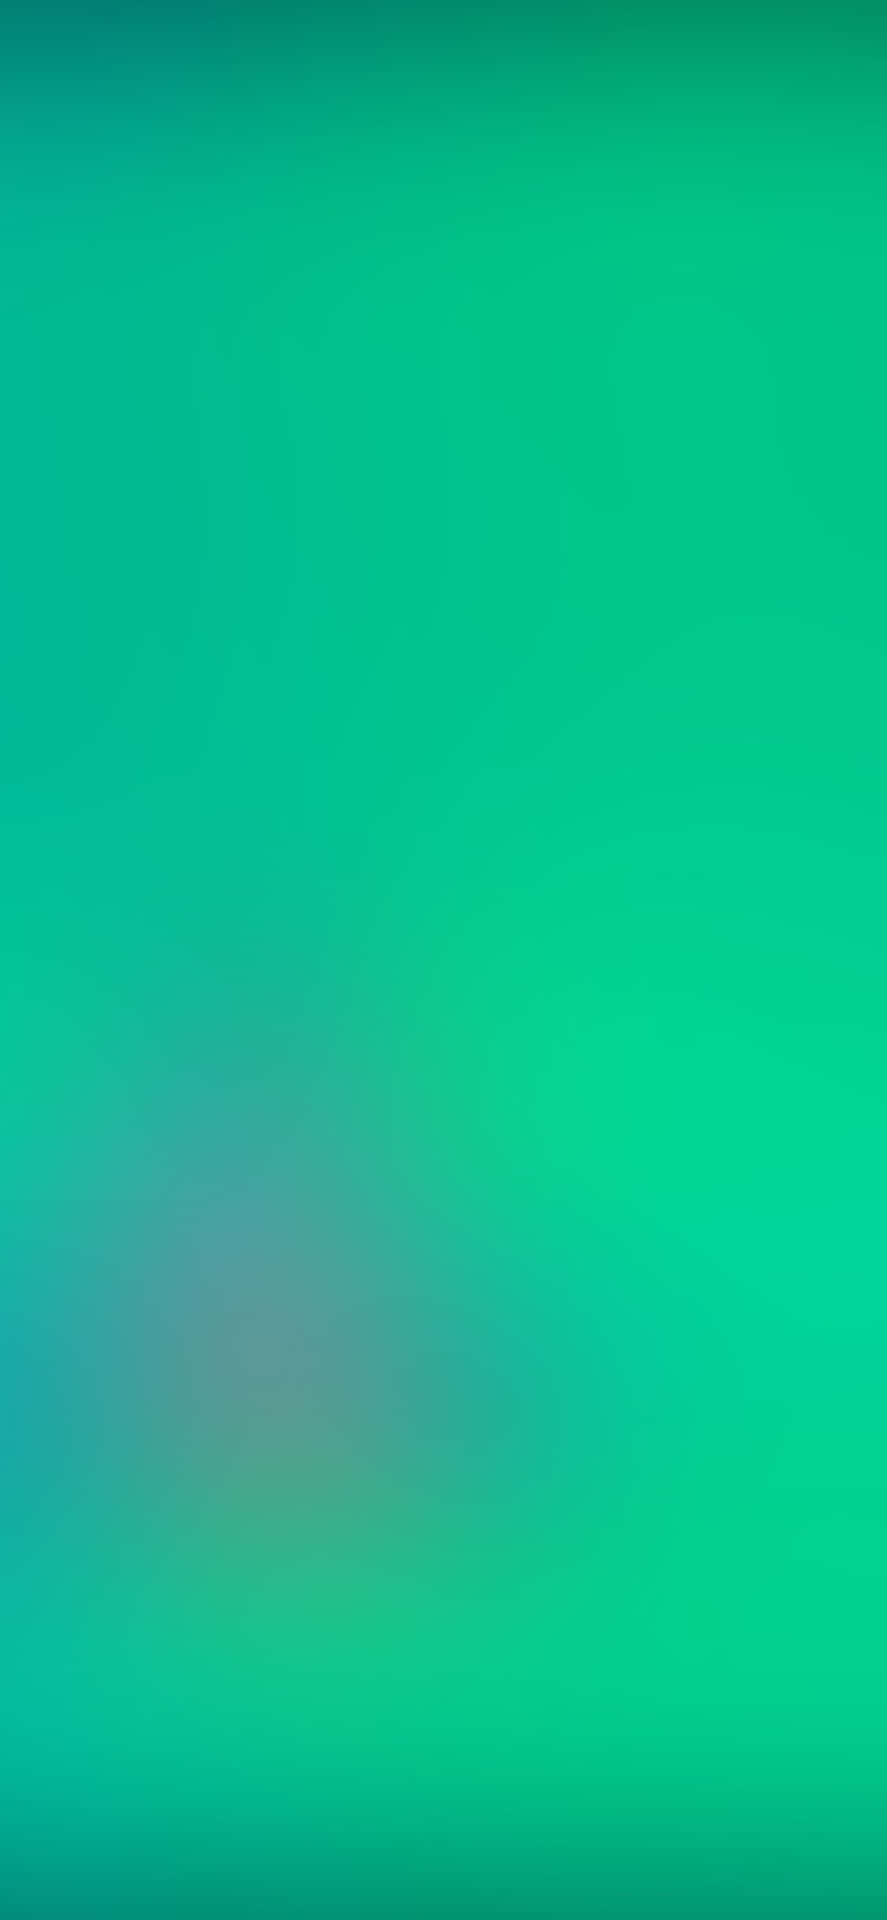 Unfondo Verde Borroso Con Un Patrón De Rayas Azules Y Verdes